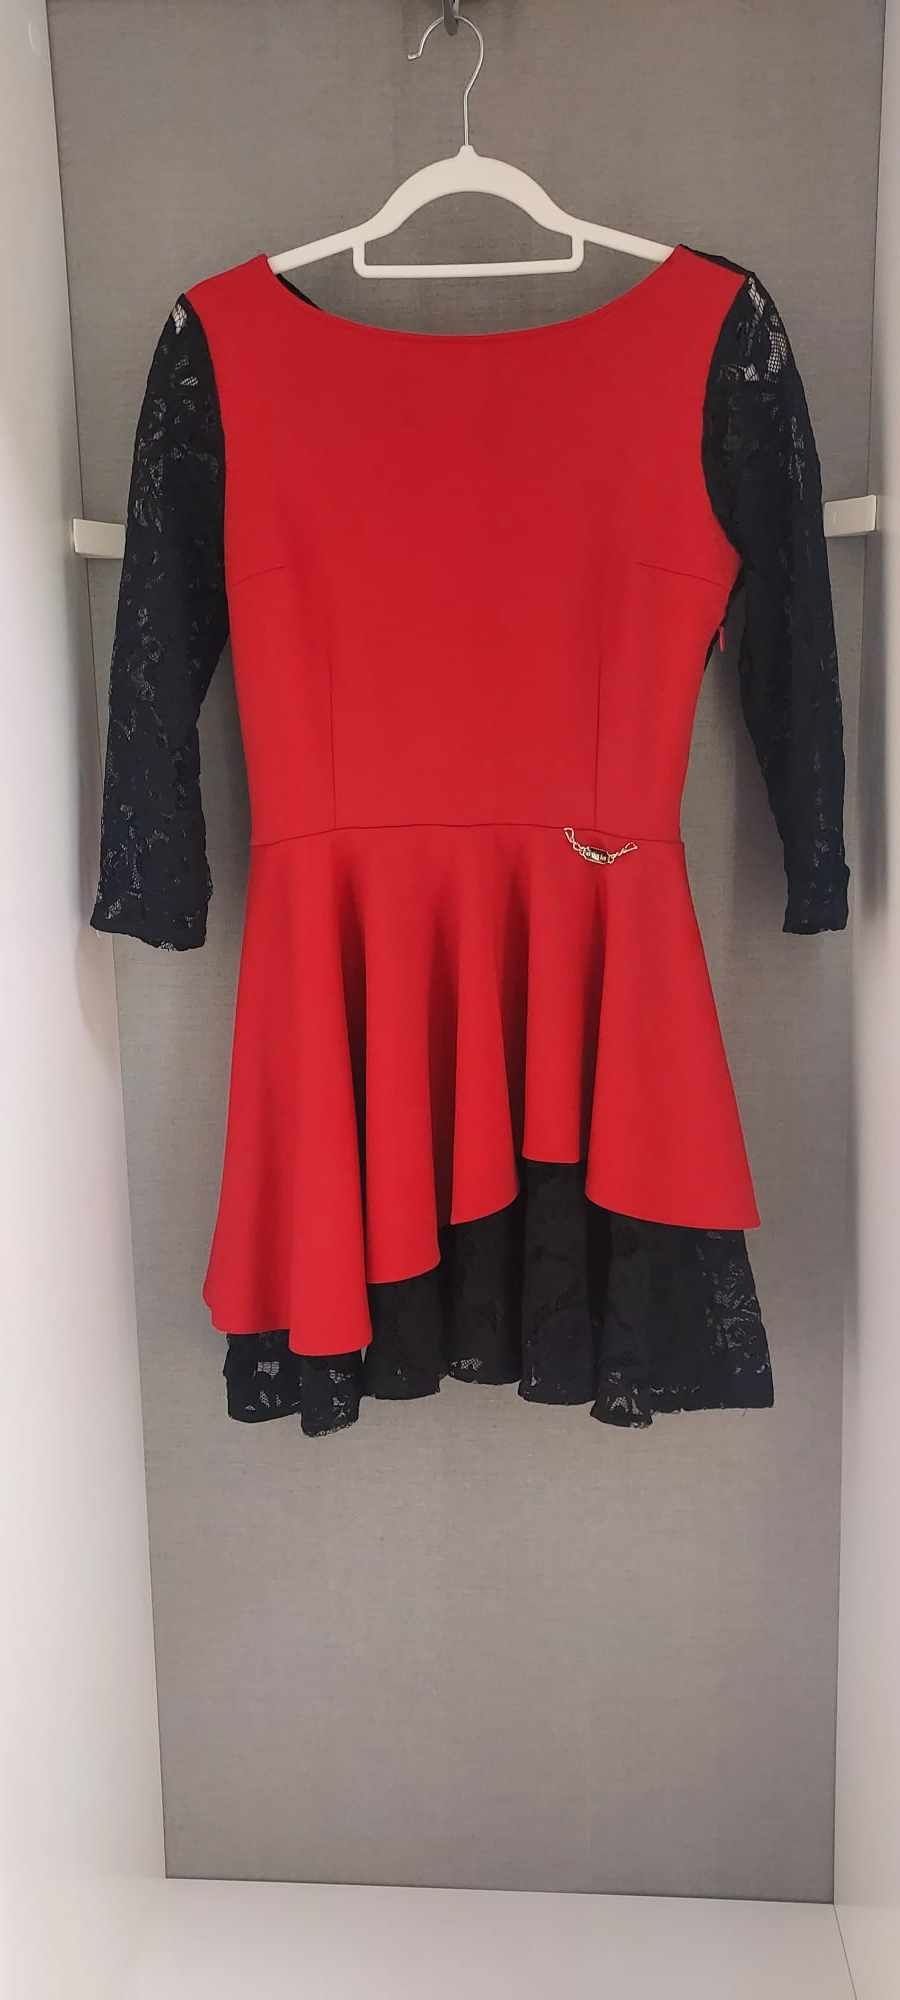 Śliczna sukienka czarno czerwona z koronką by oh lala la M